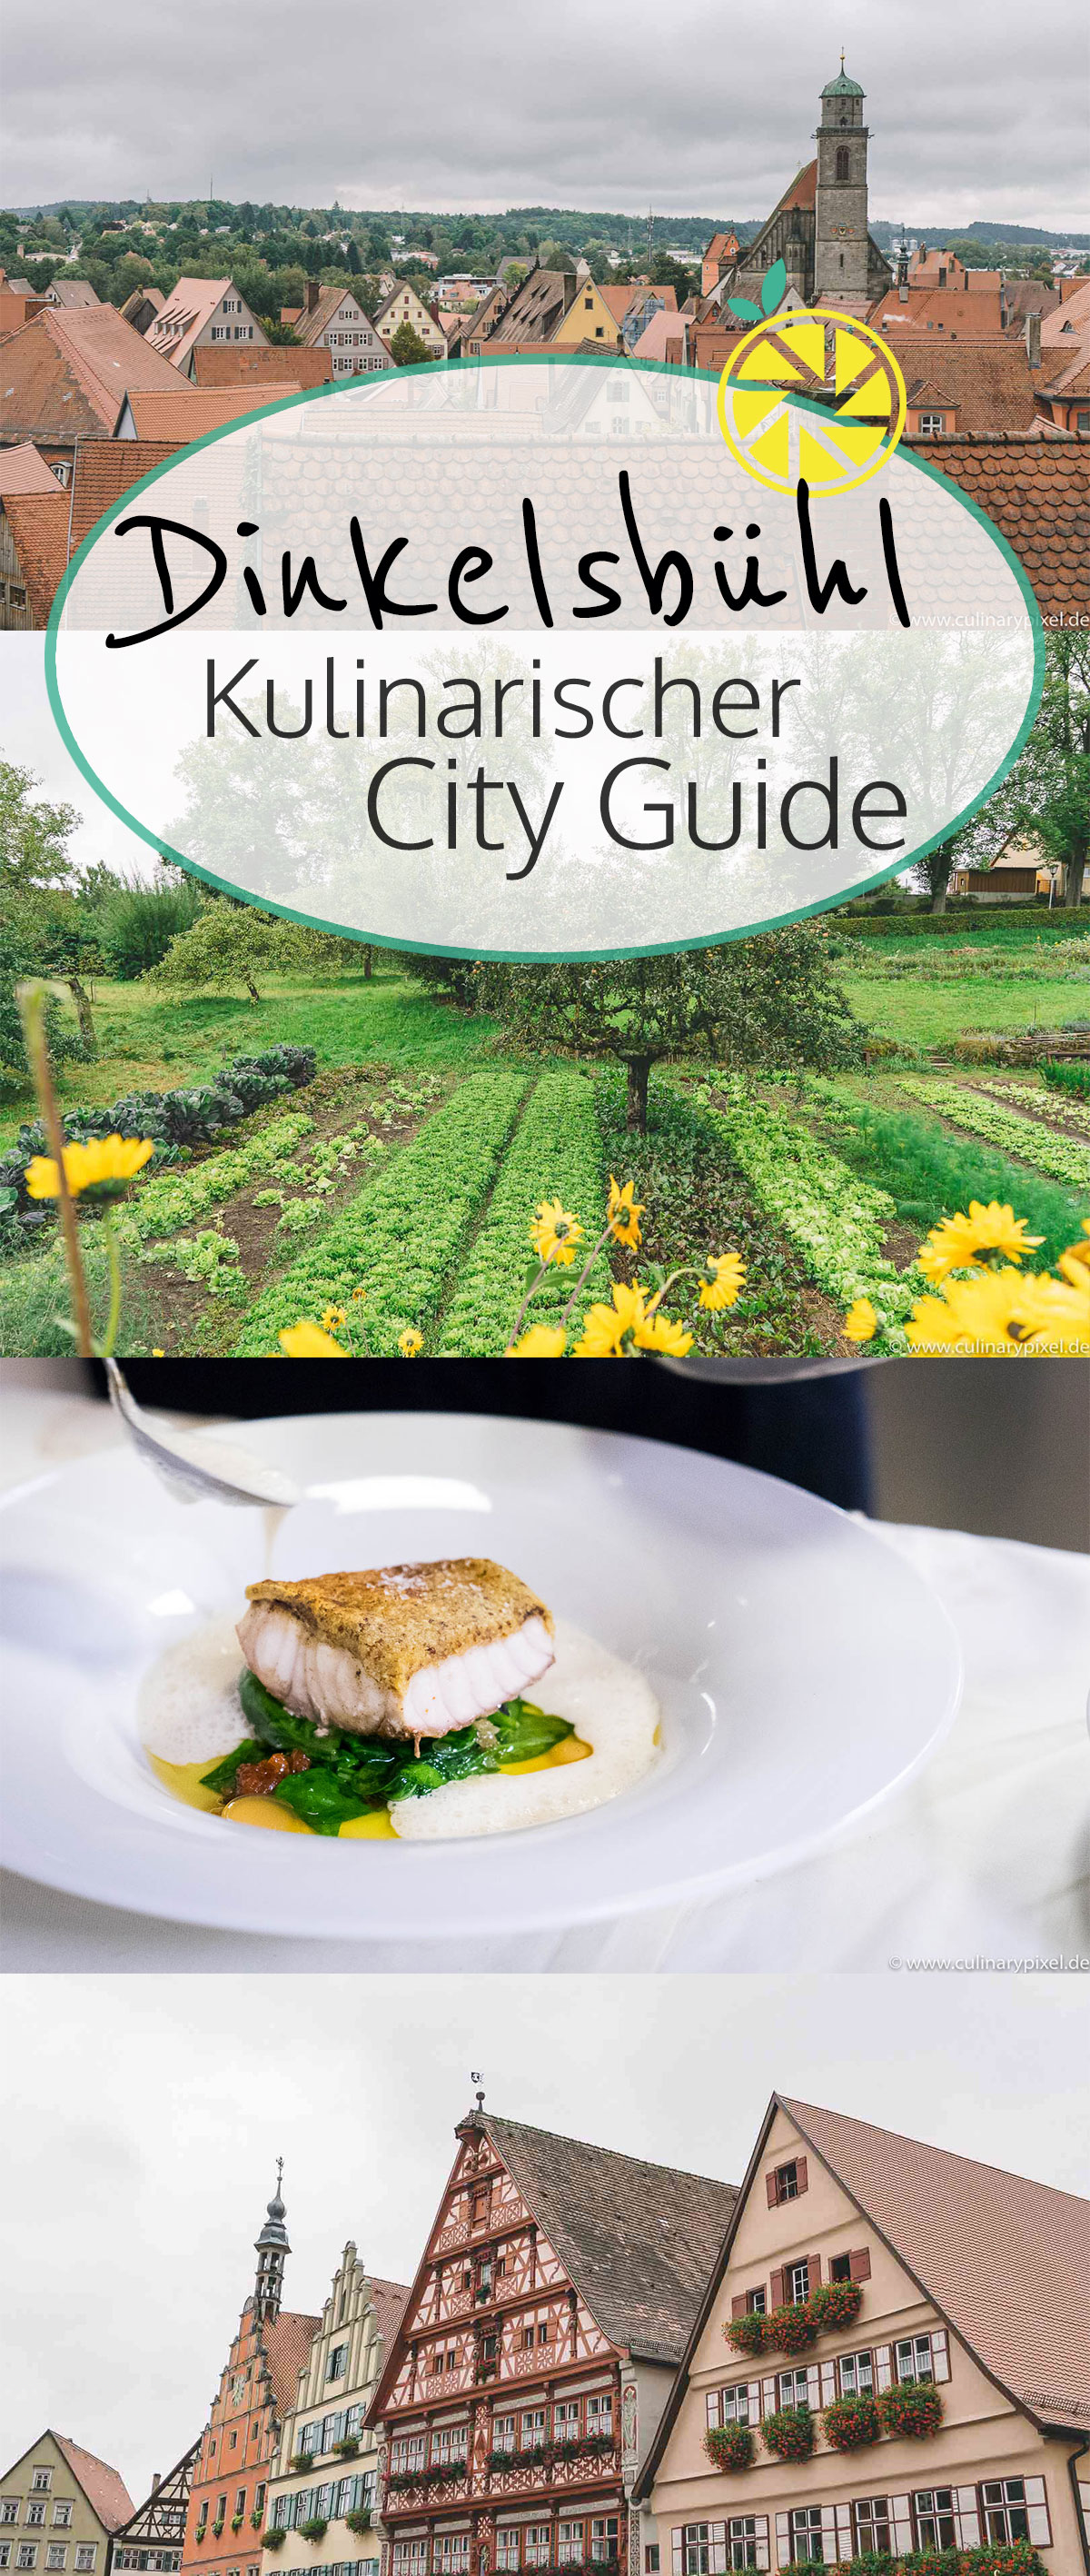 Dinkelsbühl kulinarischer City Guide: Restaurants, Hotels, Cafés und Aktivitäten